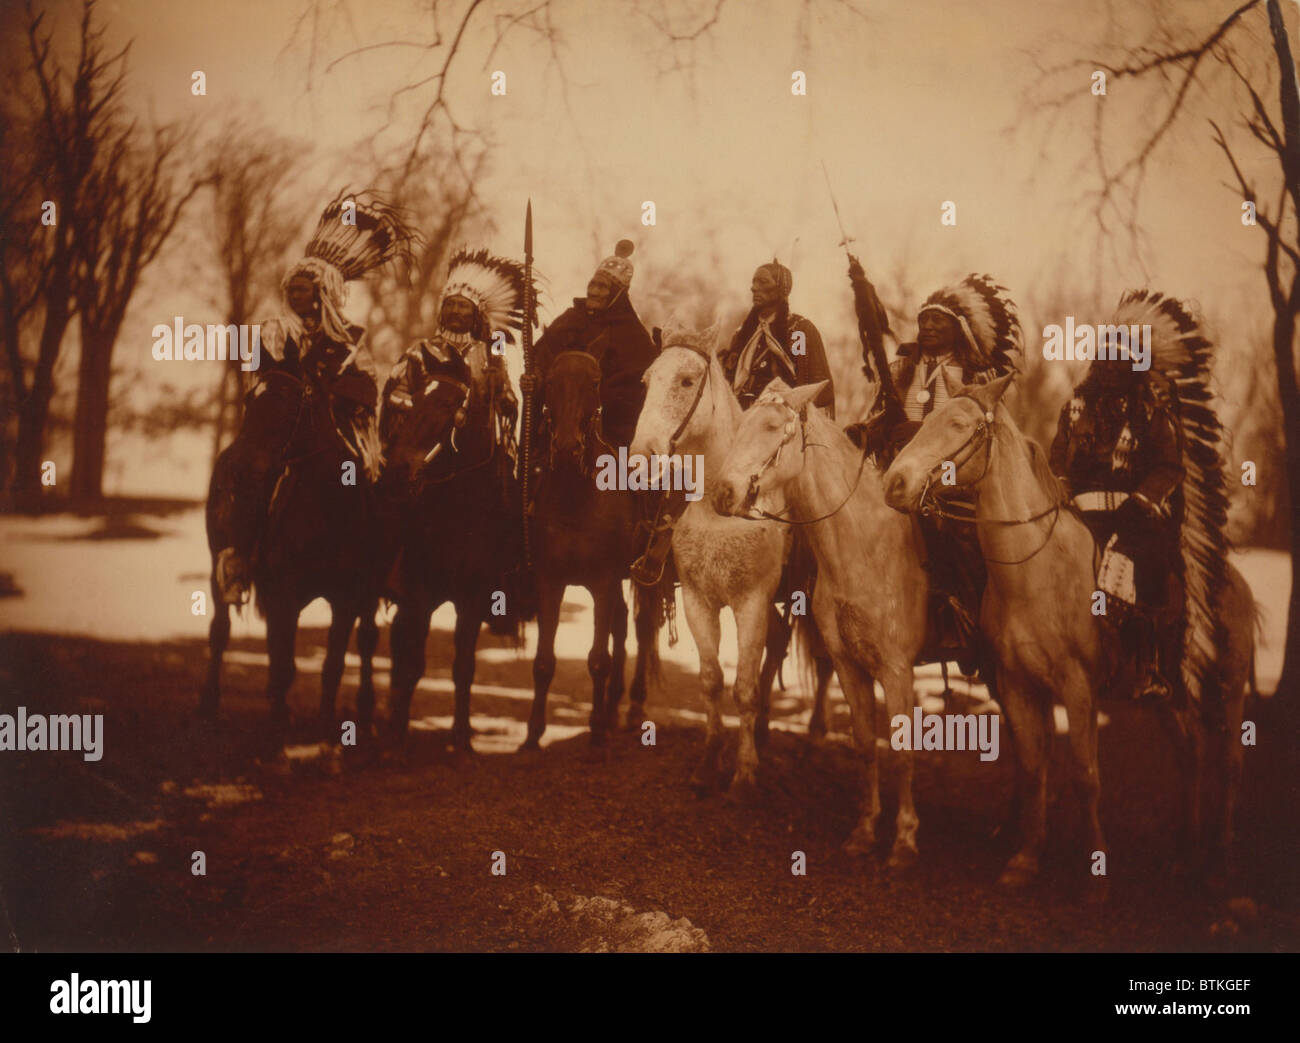 Les chefs des tribus amérindiennes en costume et à cheval. De gauche à droite : petite plume (Piégans), Charley Buckskin (SEI), Geronimo (Apache chiricahua), Quanah (Parker (Comanche), creux de l'ours de l'avertisseur sonore (Brule Sioux), et American Horse (Sioux Oglala). Photo par Edward Curtis. Banque D'Images